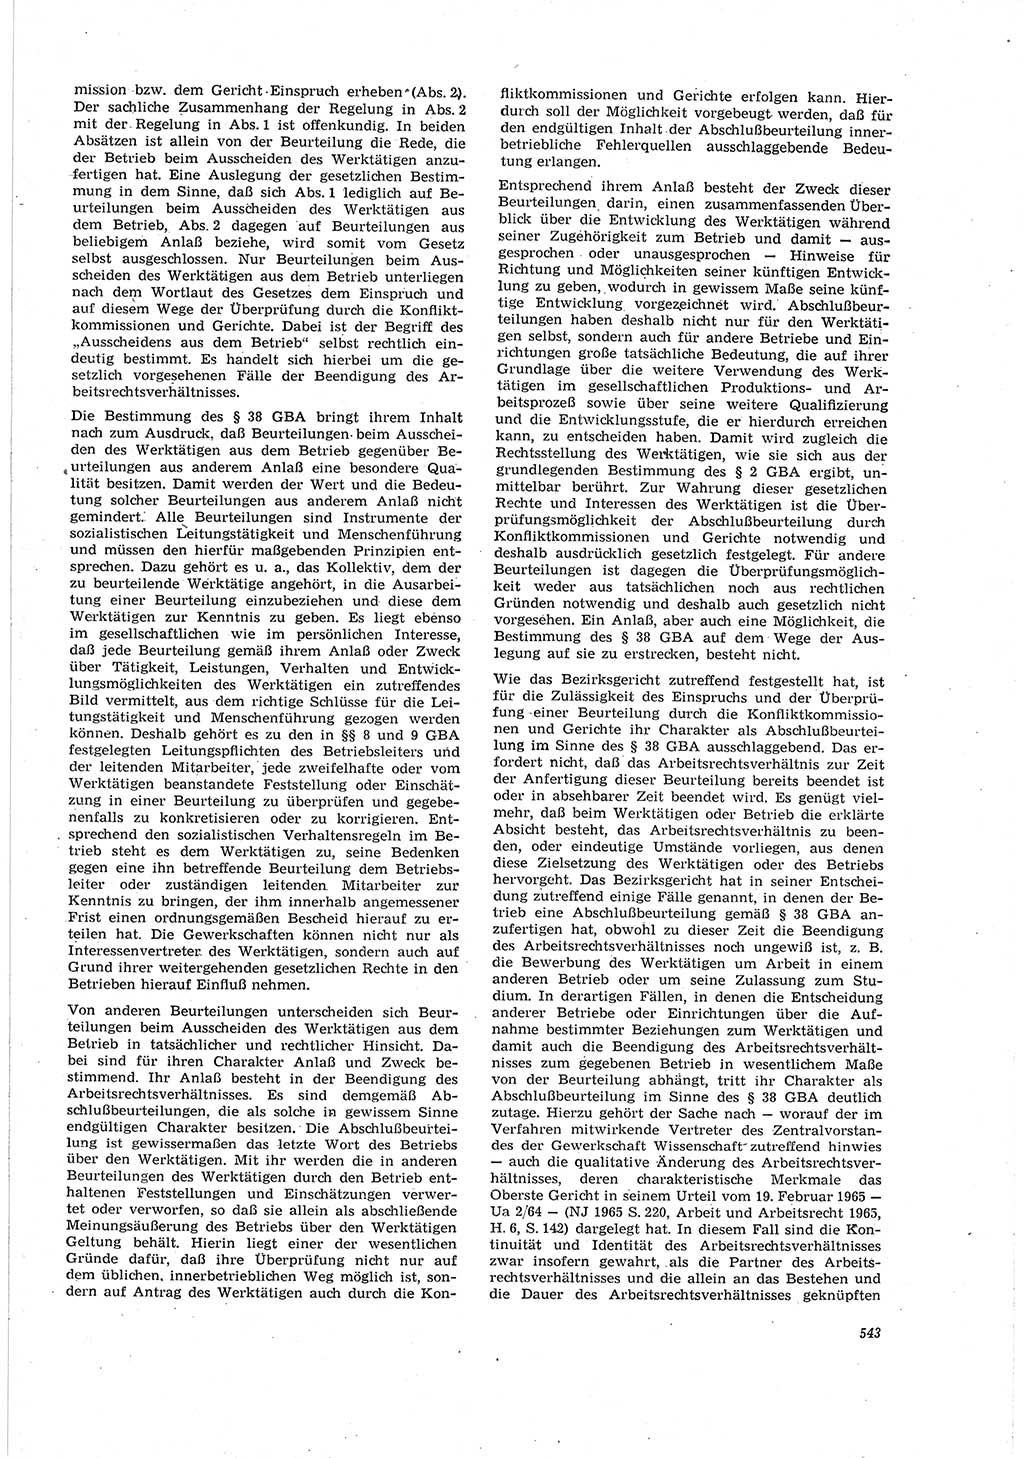 Neue Justiz (NJ), Zeitschrift für Recht und Rechtswissenschaft [Deutsche Demokratische Republik (DDR)], 20. Jahrgang 1966, Seite 543 (NJ DDR 1966, S. 543)